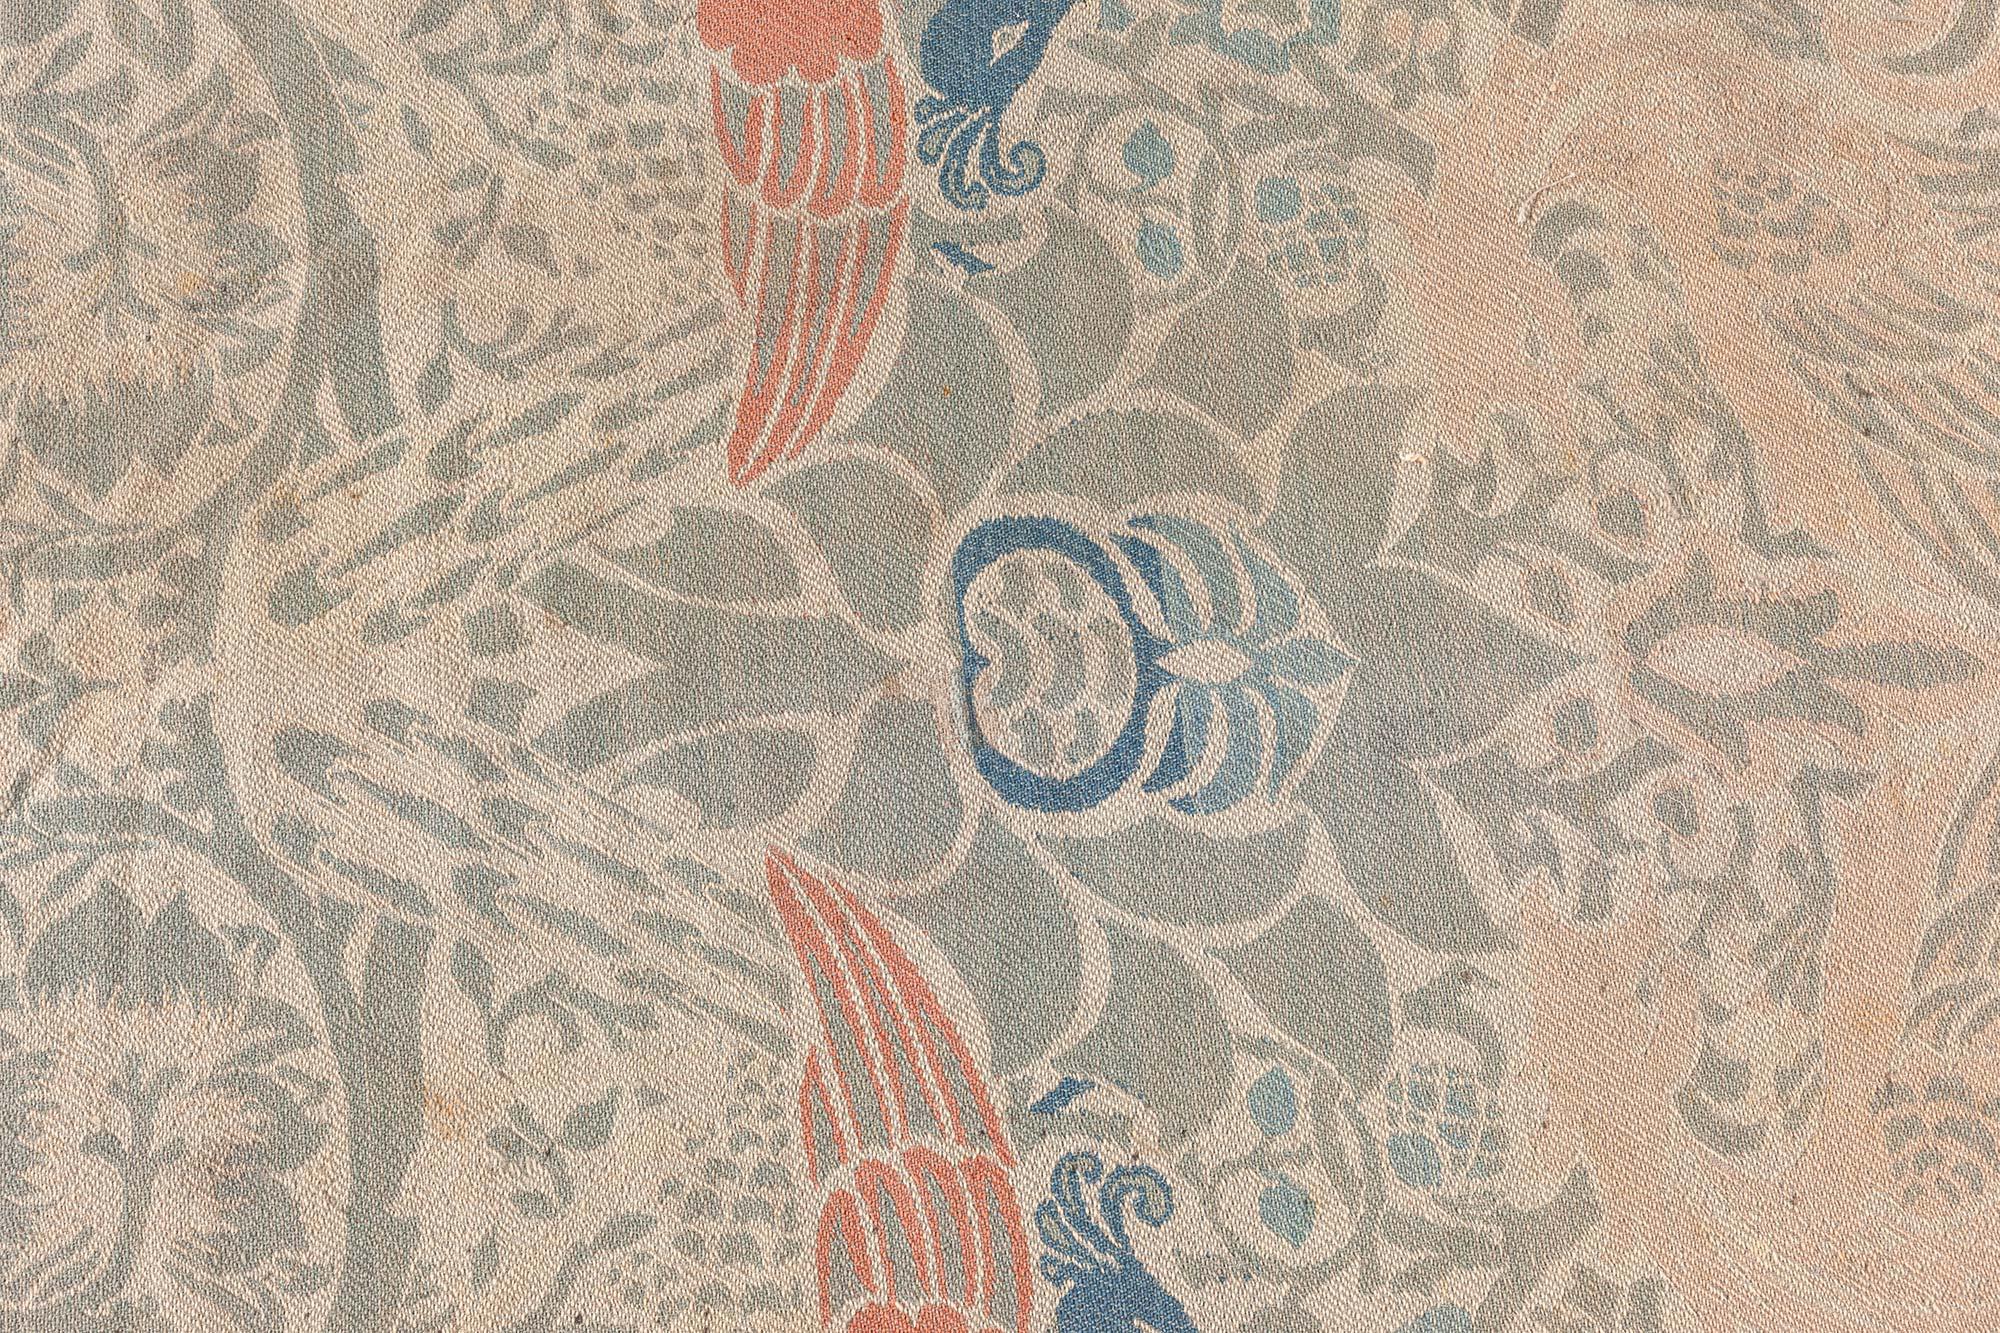 1900s William Morris Textile
Size: 5'4